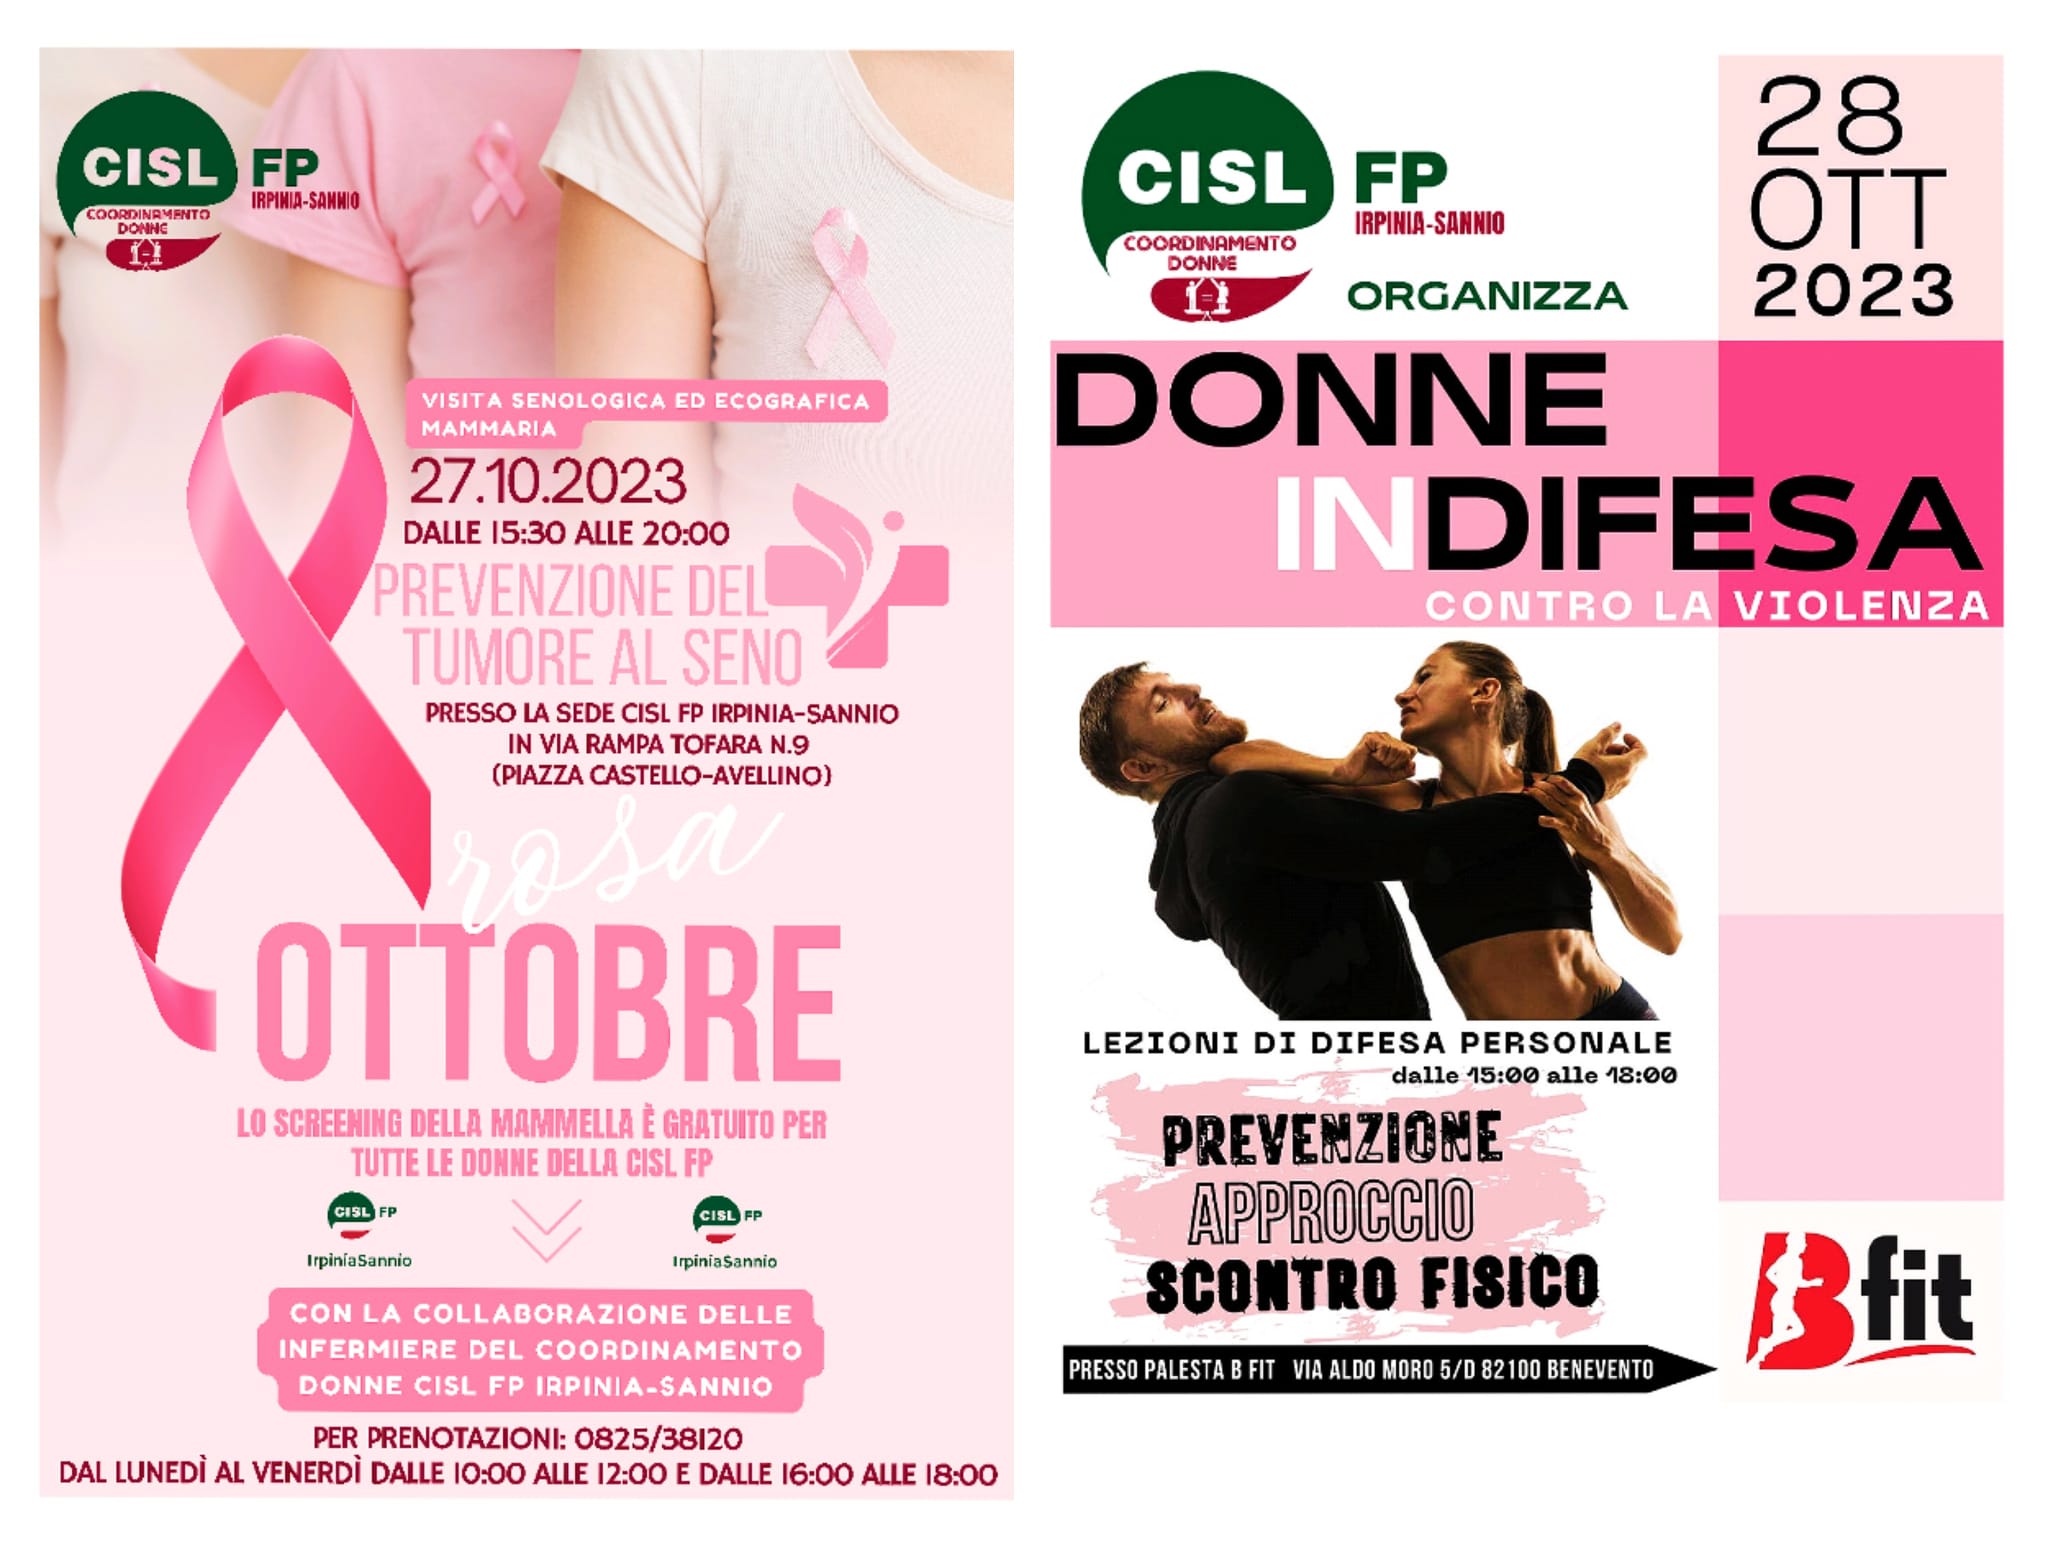 Il Coordinamento Donne Cisl Fp Irpinia Sannio  promuove corsi gratuiti per le donne di Autodifesa e Prevenzione del tumore al seno.